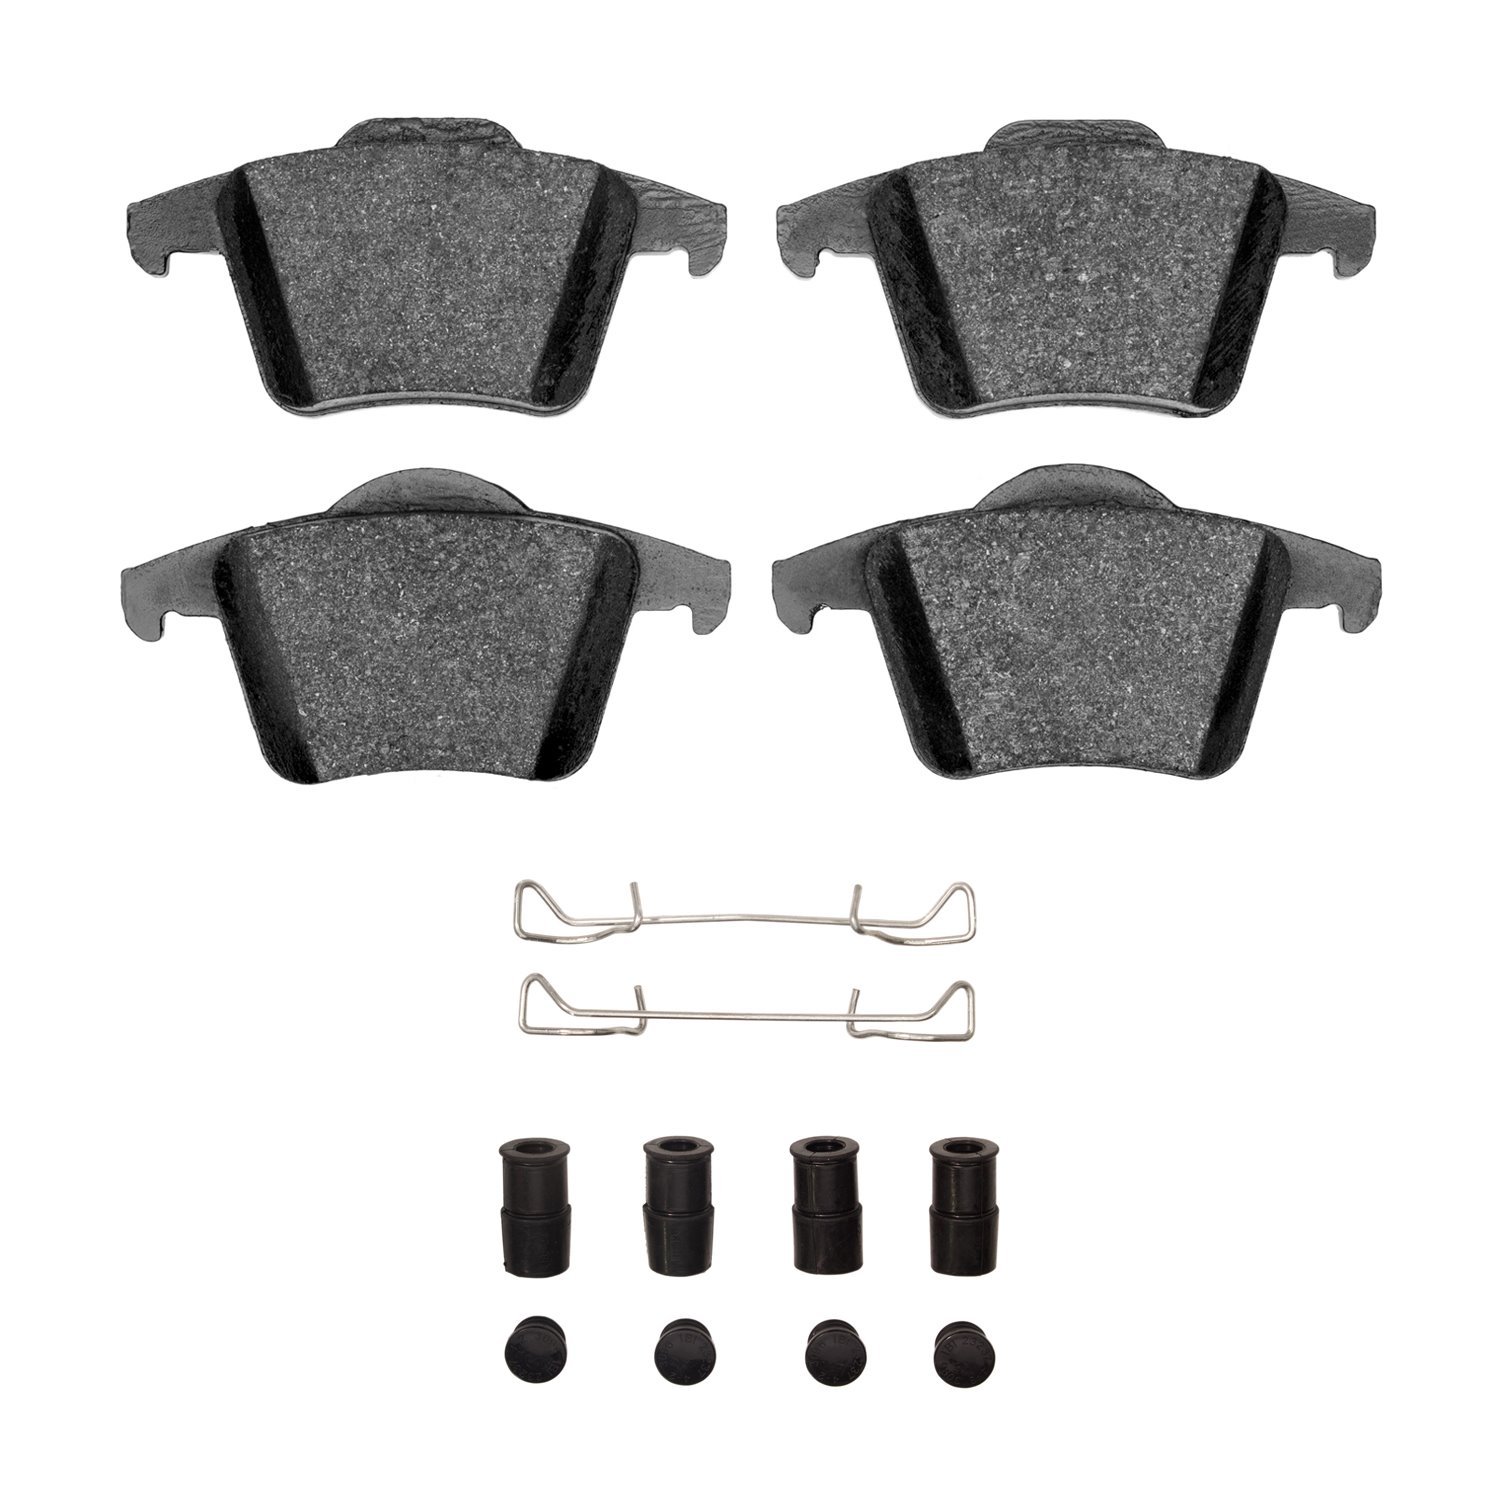 Ceramic Brake Pads & Hardware Kit, 2003-2014 Volvo, Position: Rear